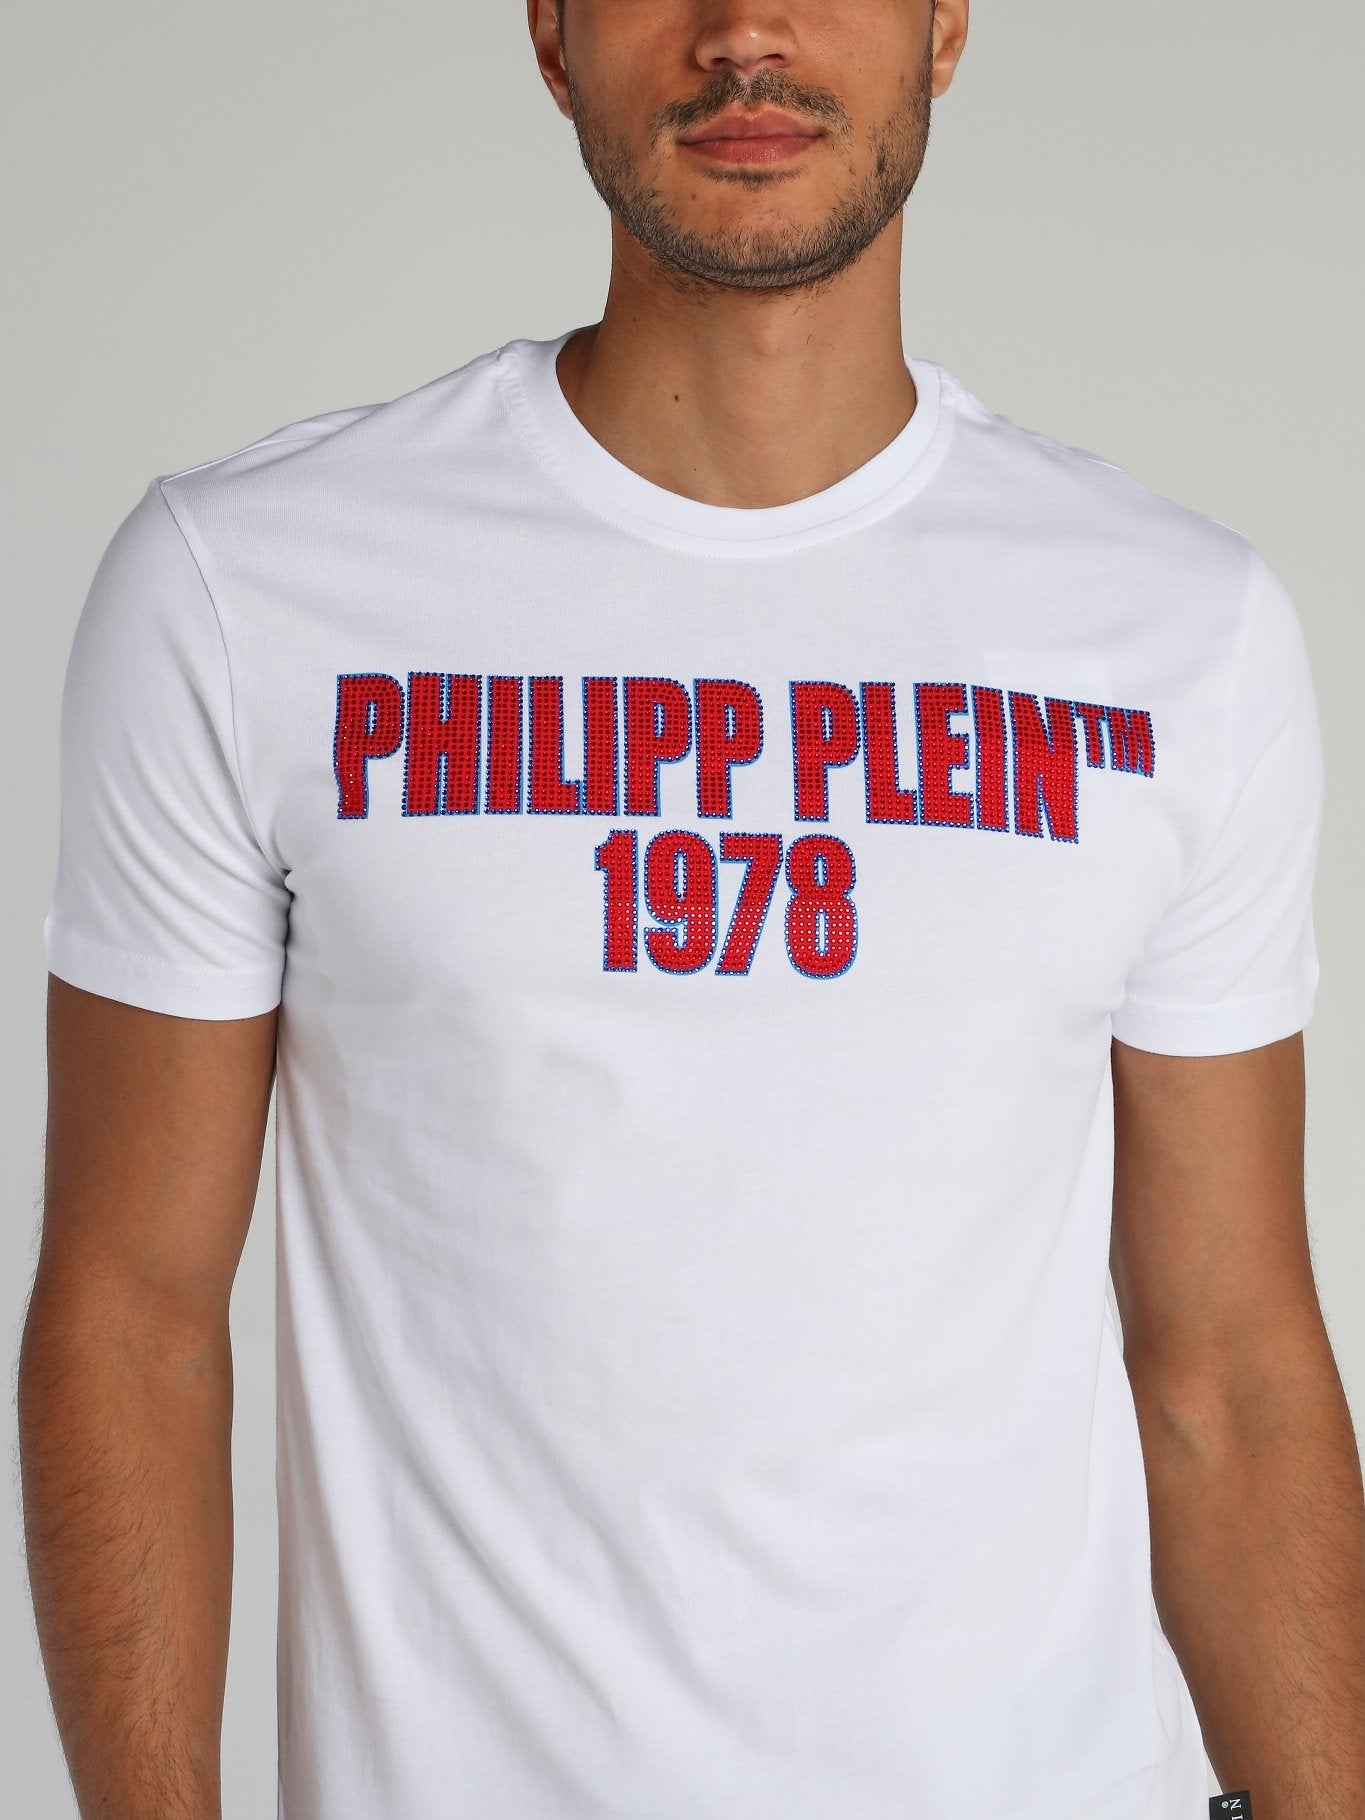 PP1978 White Studded Logo T-Shirt